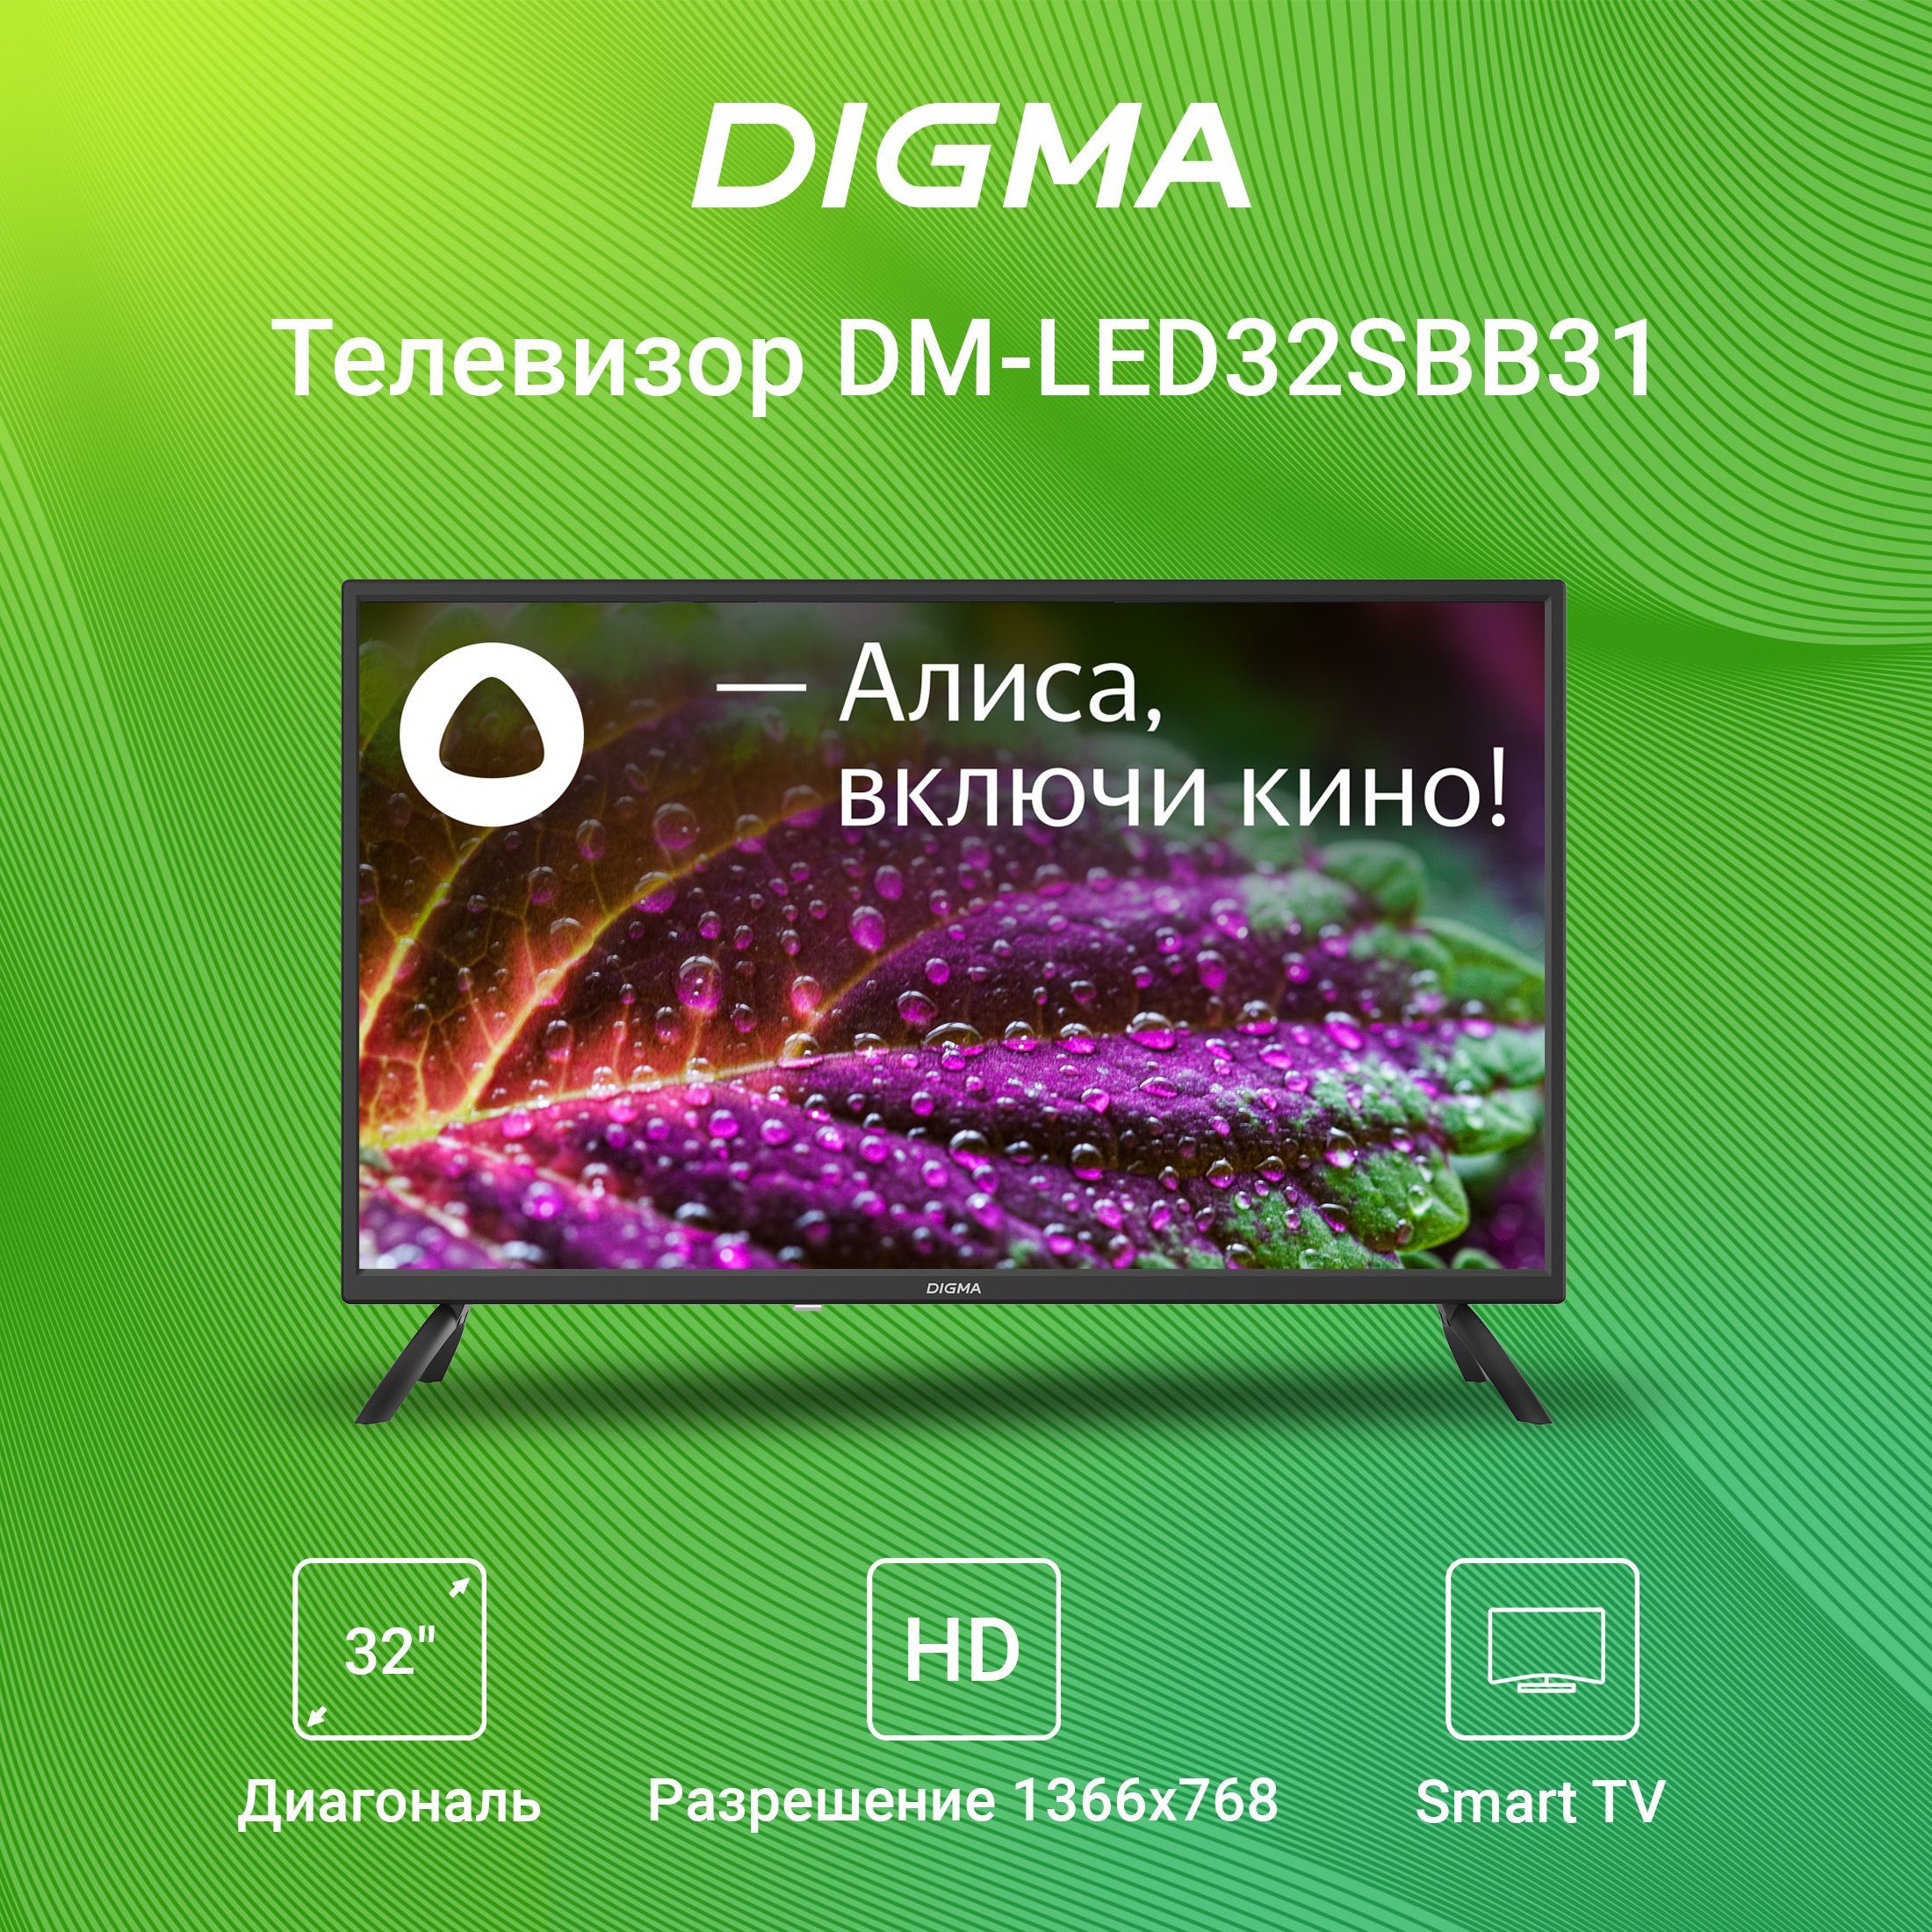 Телевизор digma 32. DM-led55ubb31. Телевизор Дигма 55 дюймов. Digma DM-led55ubb31 55" Алиса.